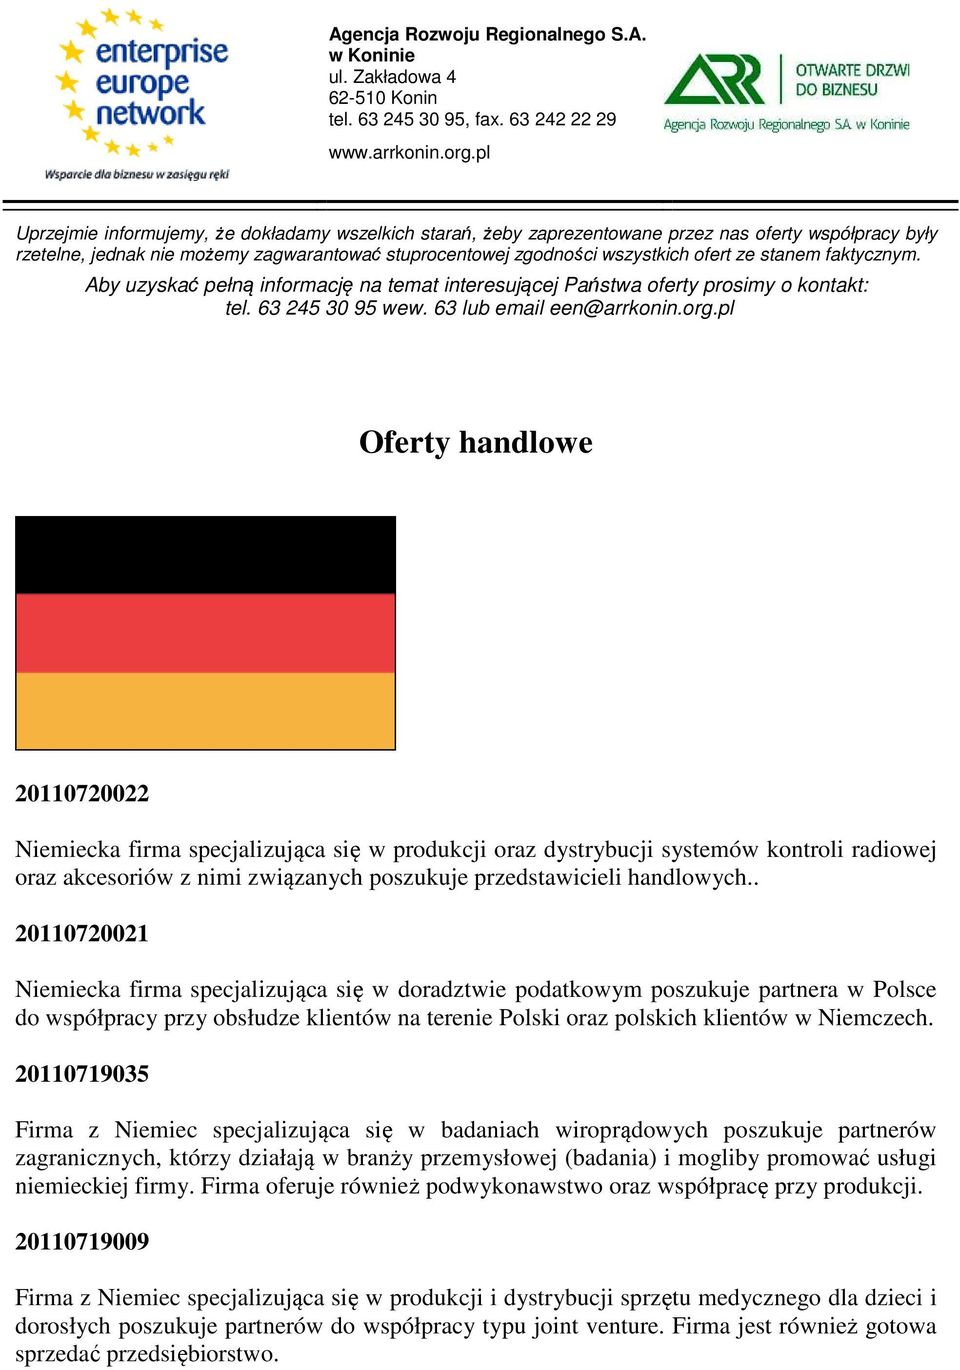 20110719035 Firma z Niemiec specjalizująca się w badaniach wiroprądowych poszukuje partnerów zagranicznych, którzy działają w branży przemysłowej (badania) i mogliby promować usługi niemieckiej firmy.